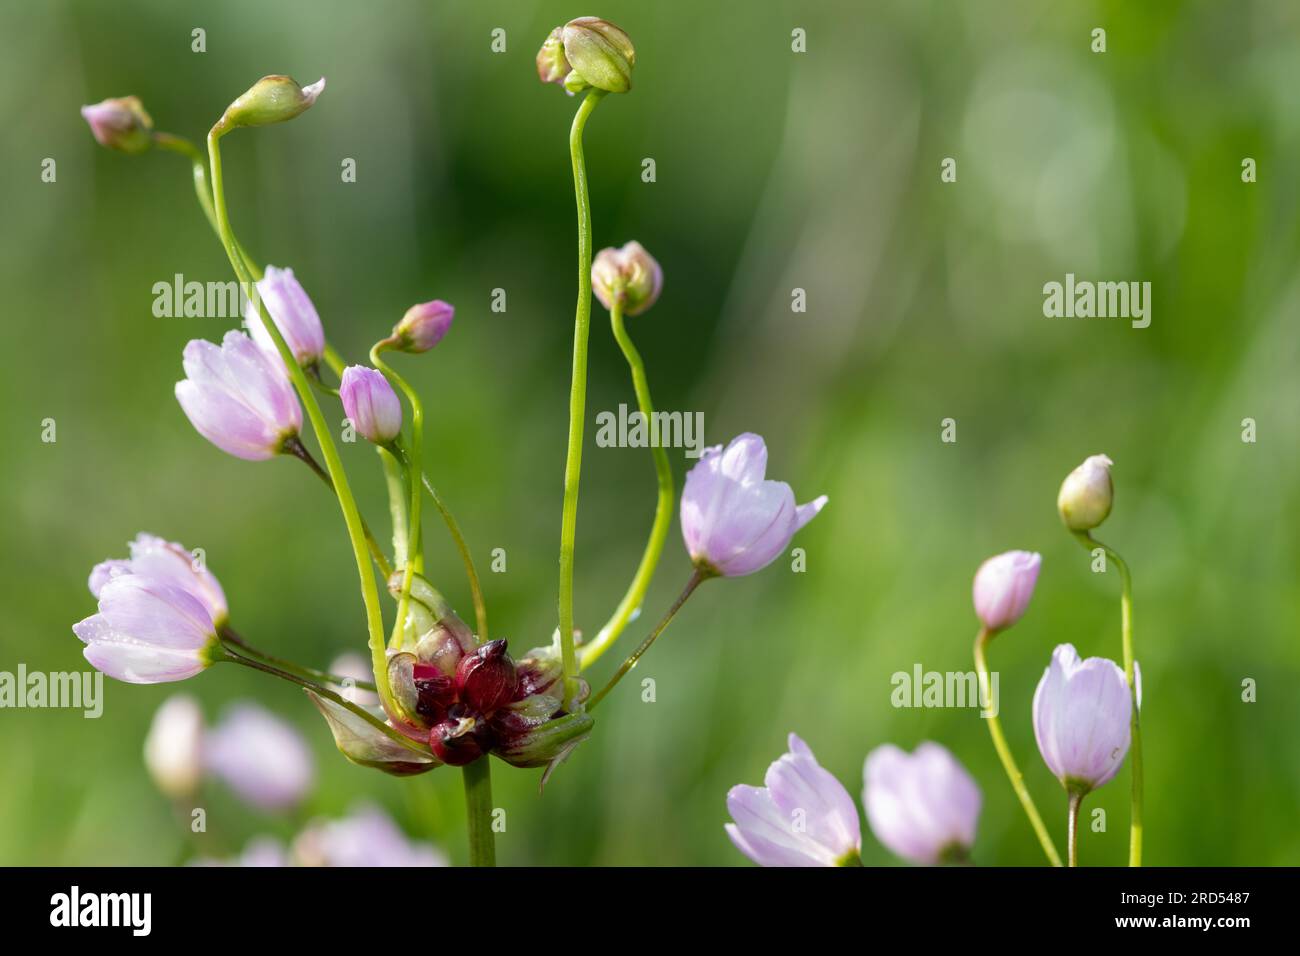 Close up of rosy garlic (allium roseum) flowers in bloom Stock Photo